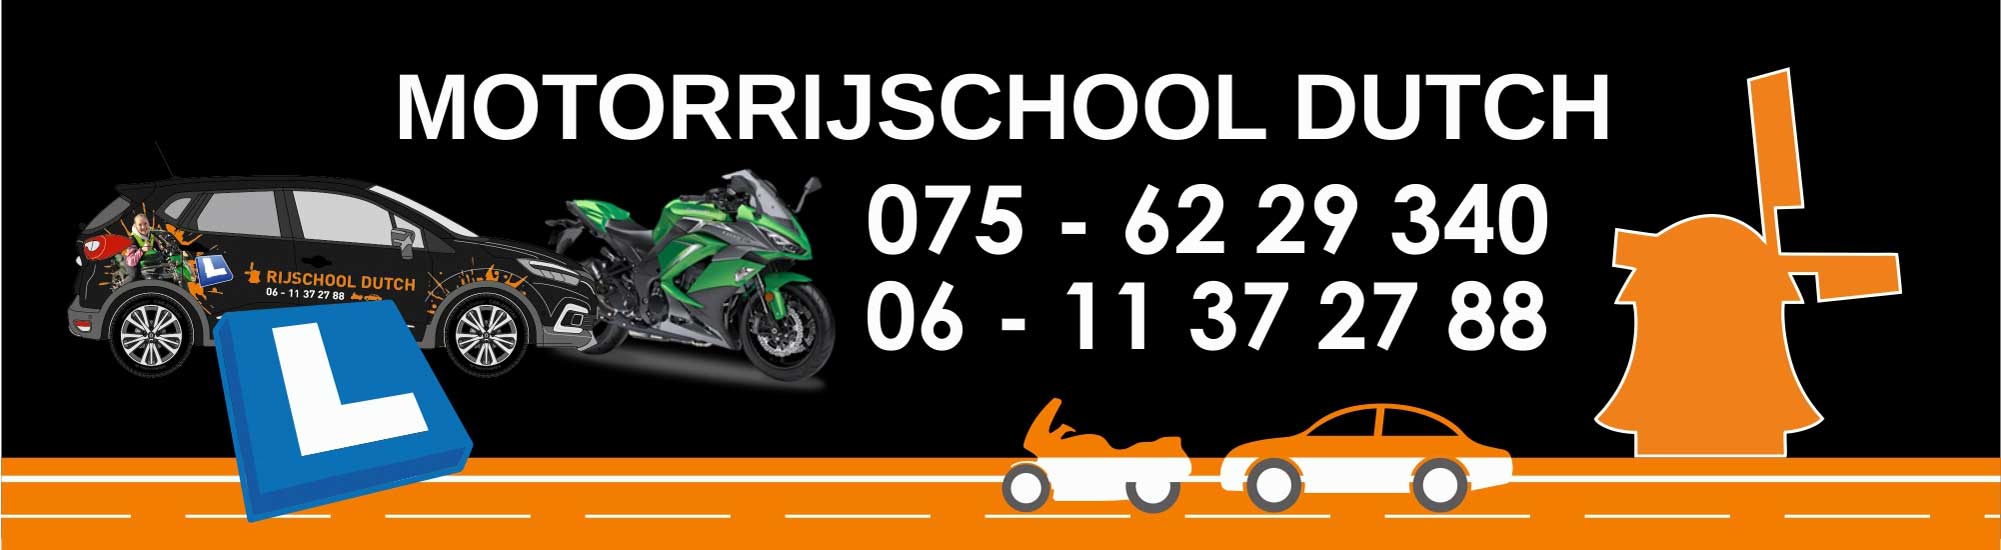 Motorrijschool Dutch